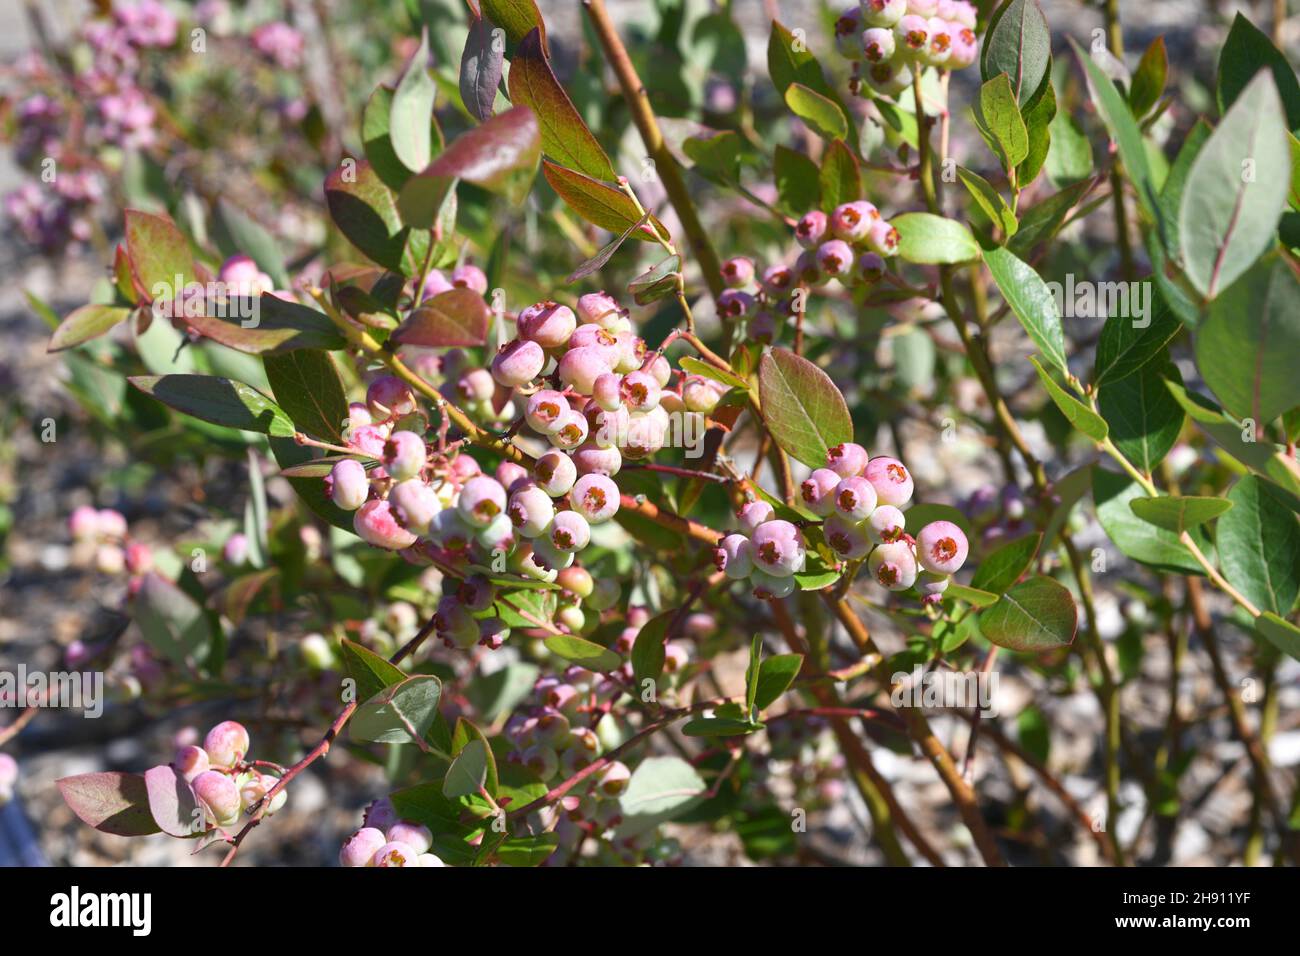 Le bleuet de l'highbush du Nord (Vaccinium corymbosum) est un arbuste décidus originaire de l'Amérique du Nord.Ses fruits sont comestibles. Banque D'Images